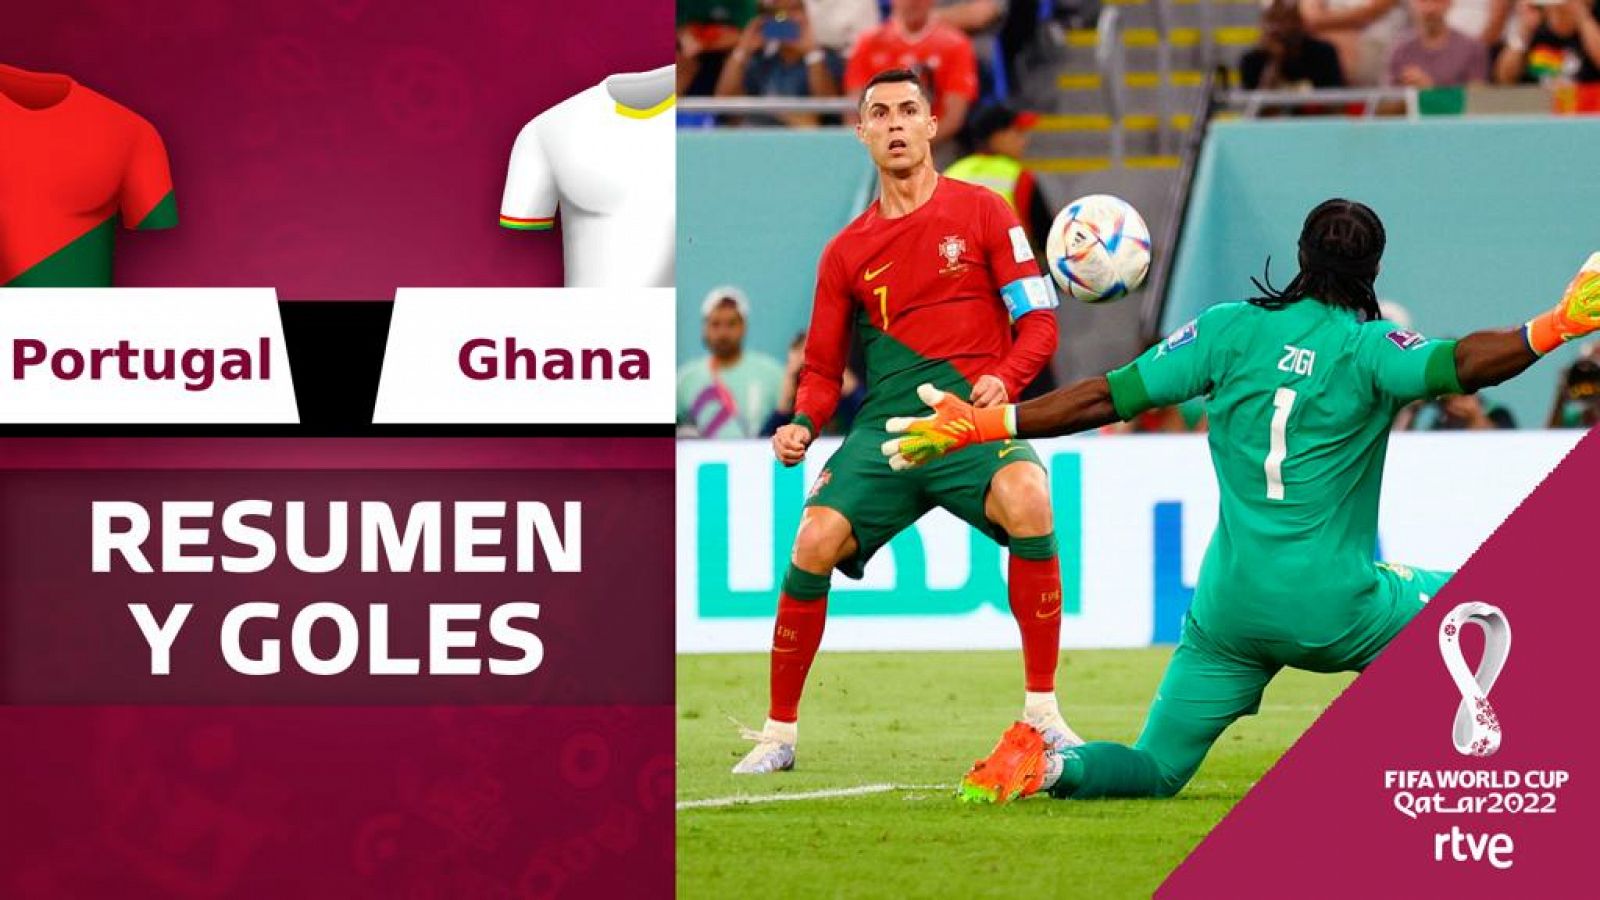 Se larga el Mundial de fútbol femenino: Uruguay debuta ante Ghana a las 19  horas